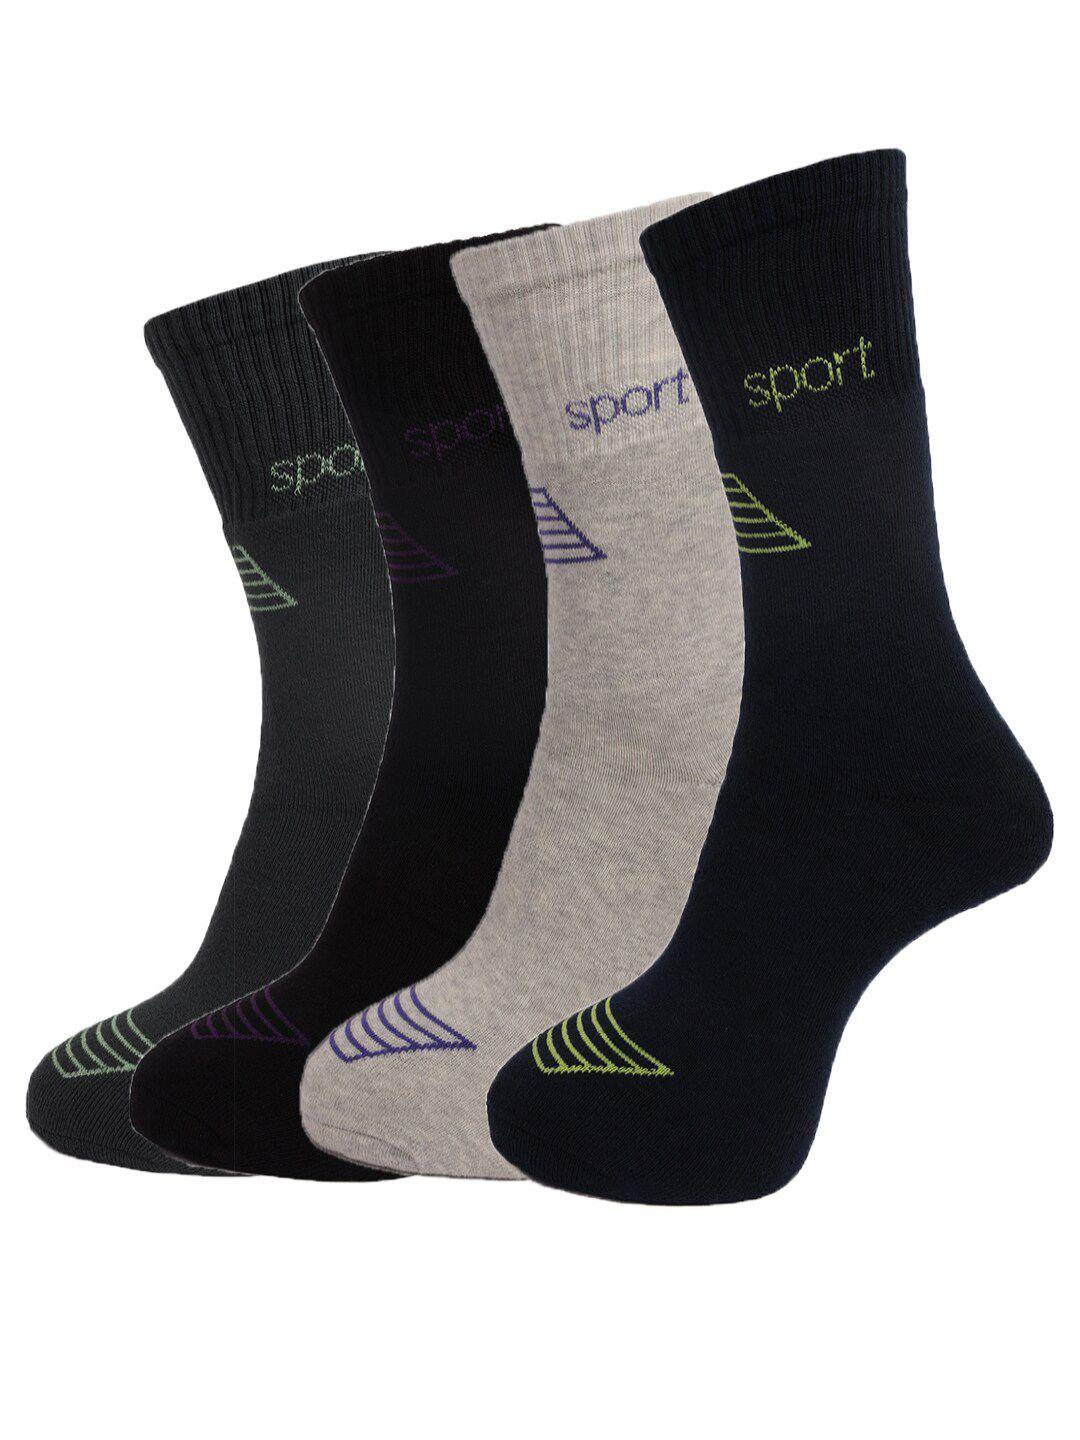 dollar socks men pack of 4 assorted cotton above ankle-length socks